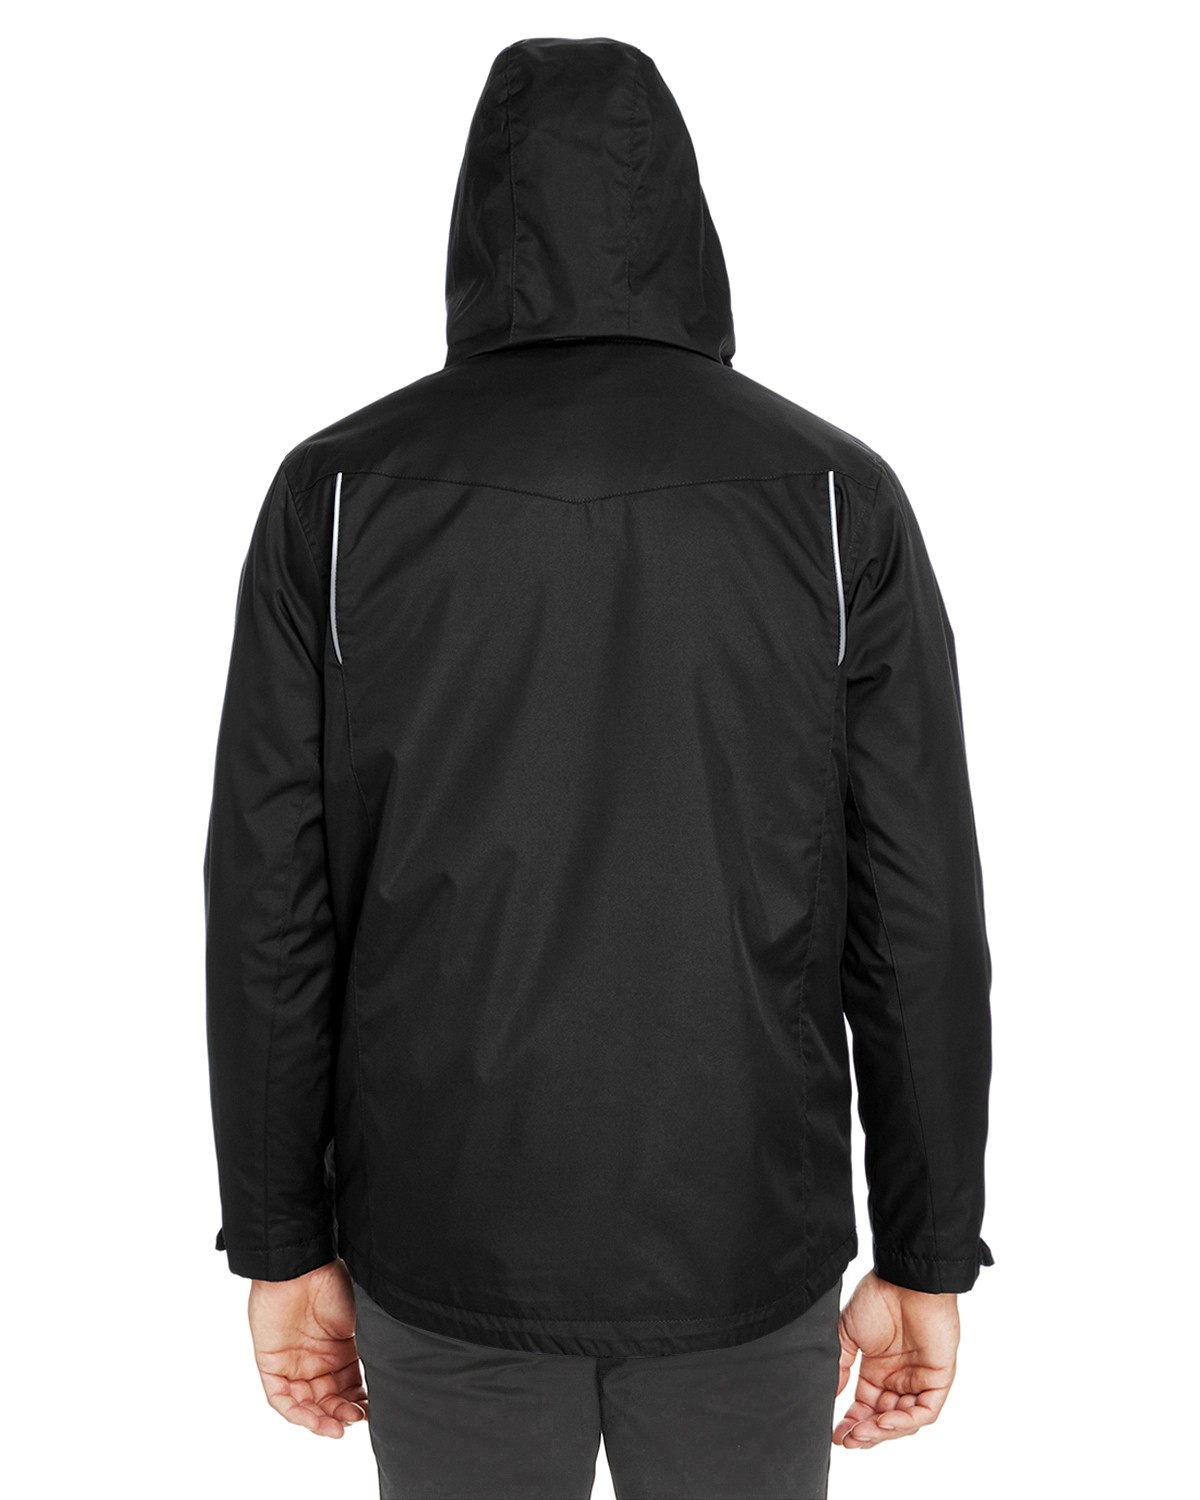 Core 365 88205 Men's Region 3-In-1 Jacket With Fleece Liner